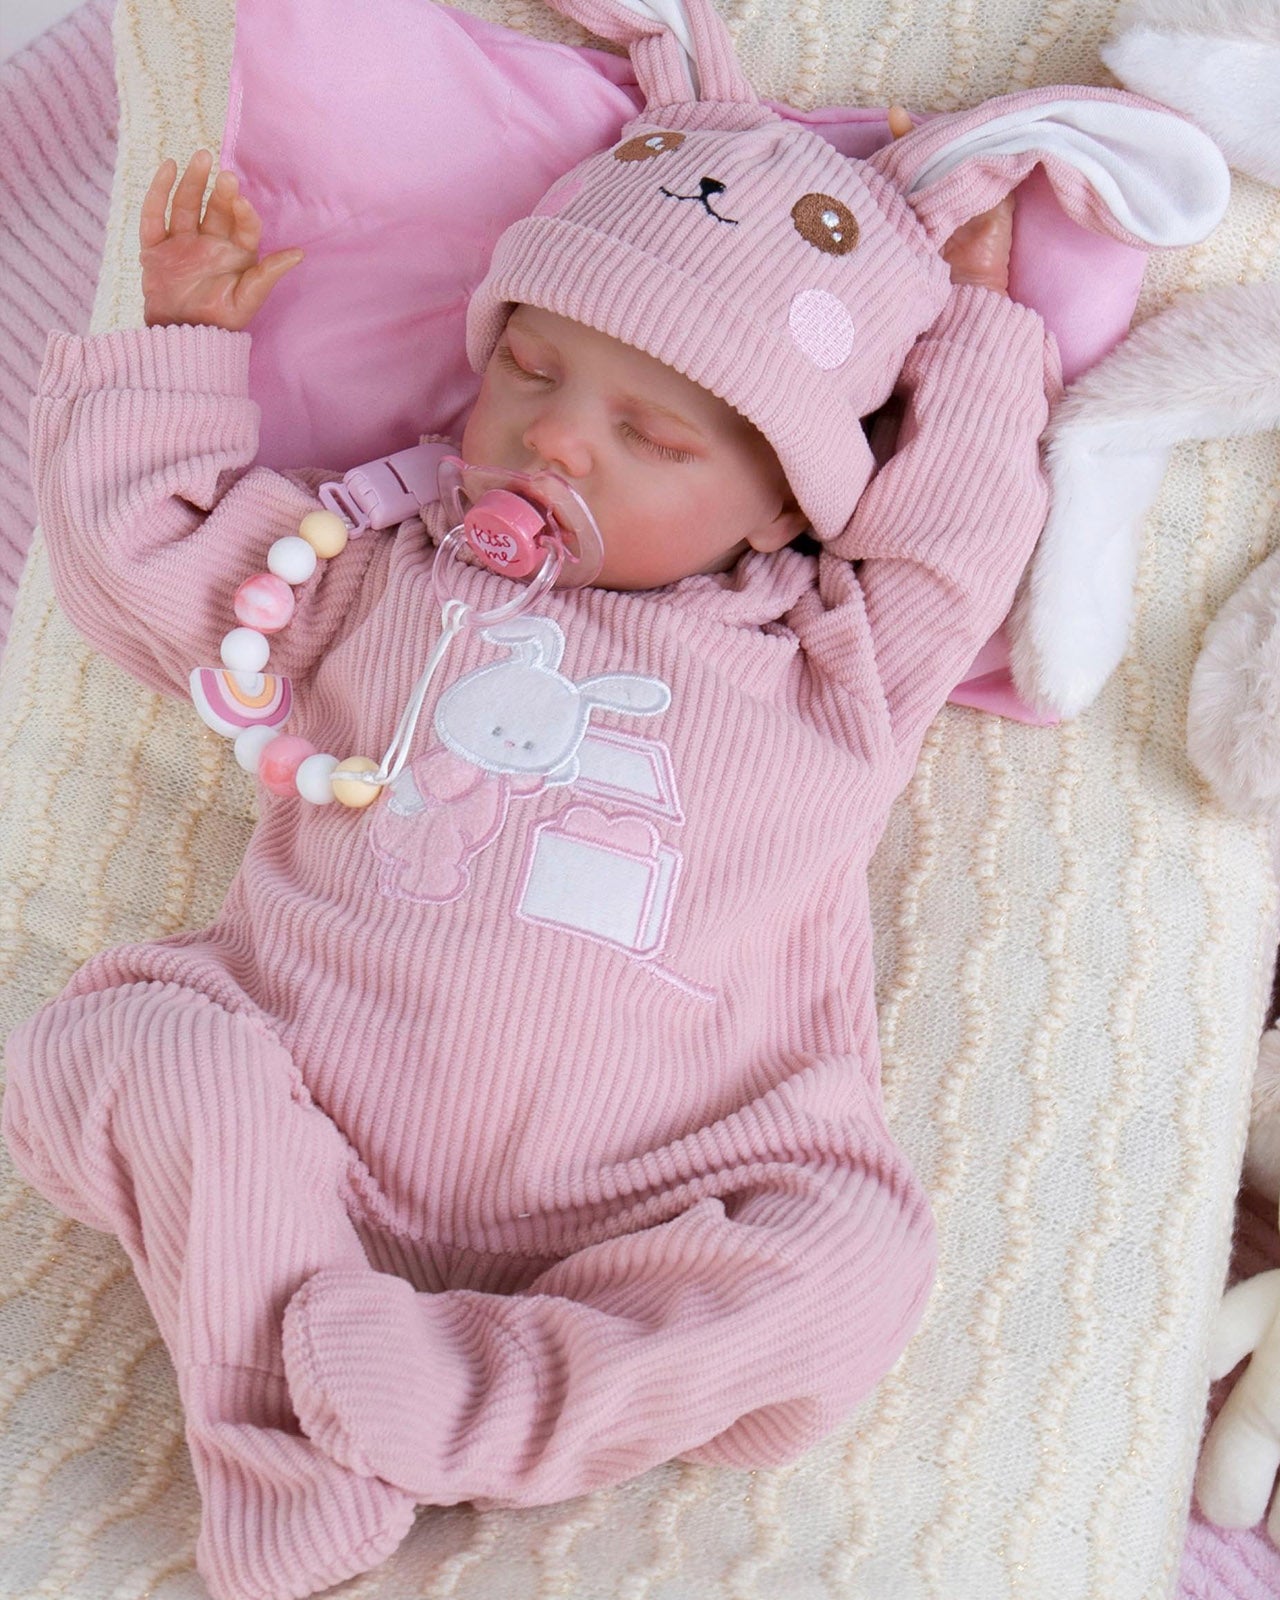 Lilian - 18" Reborn Baby Dolls Soft Body Realistic Newborn Girl with Cute Sleeping Face